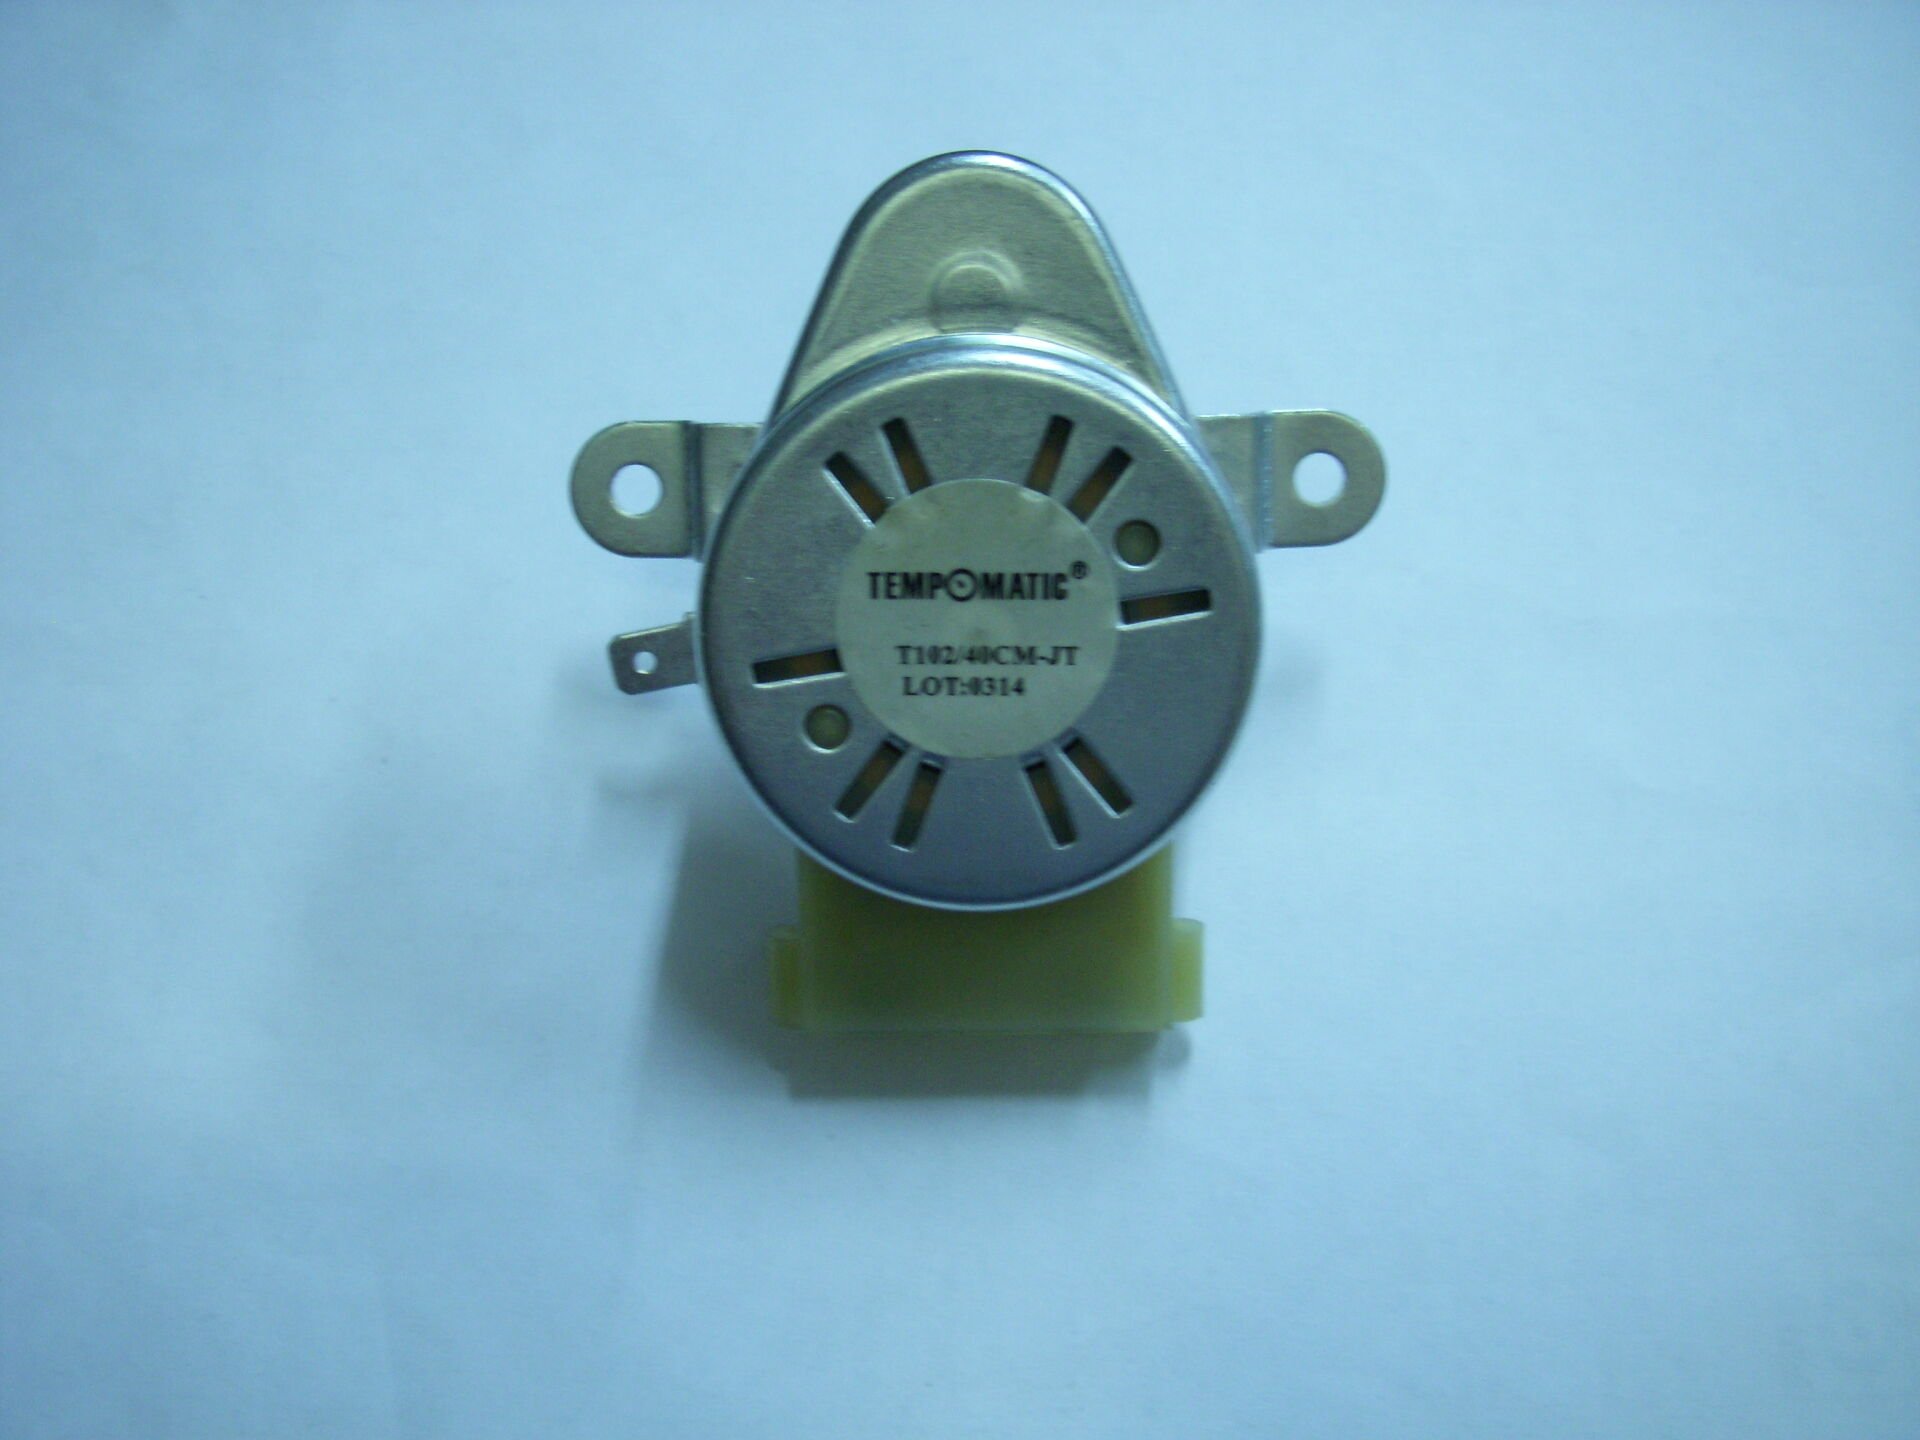 Mini Redüktör 4 Watt 2 Devir 220V (T102/40CM-JT Tempomatic)